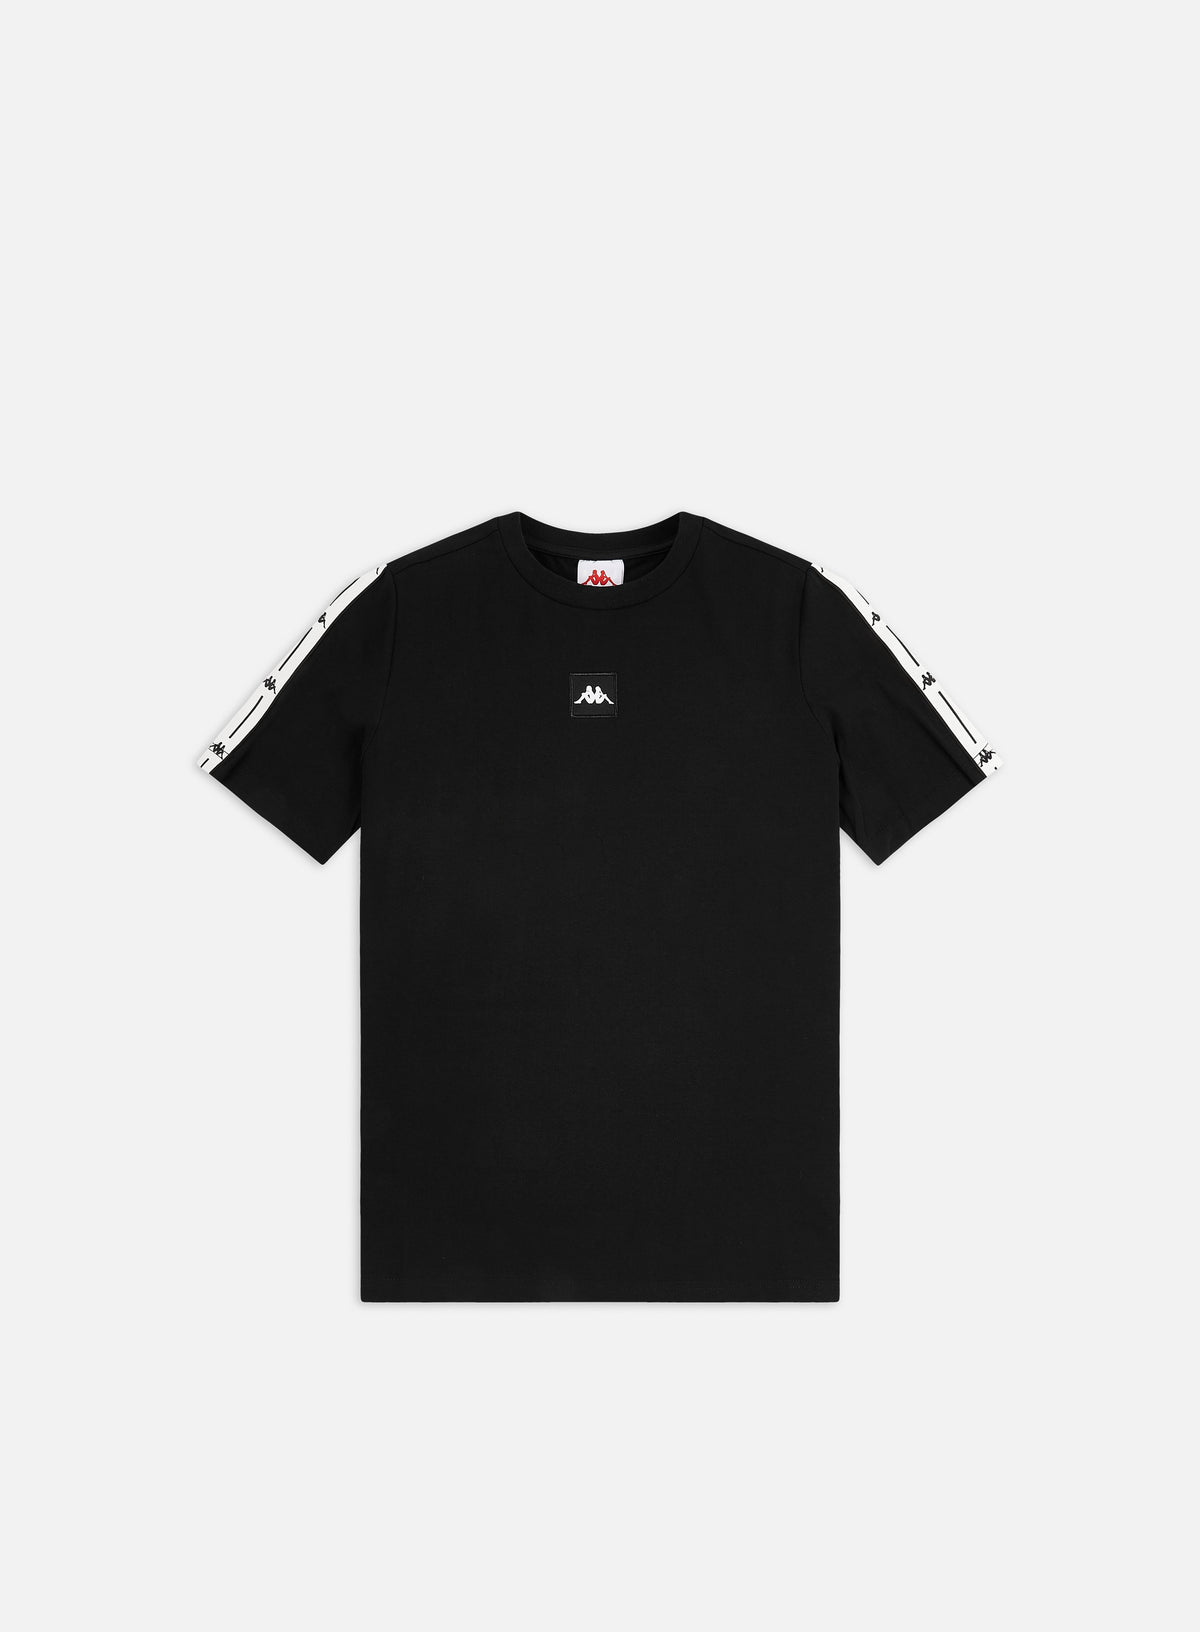 Kappa SS21 JPN Devo T-shirt Black